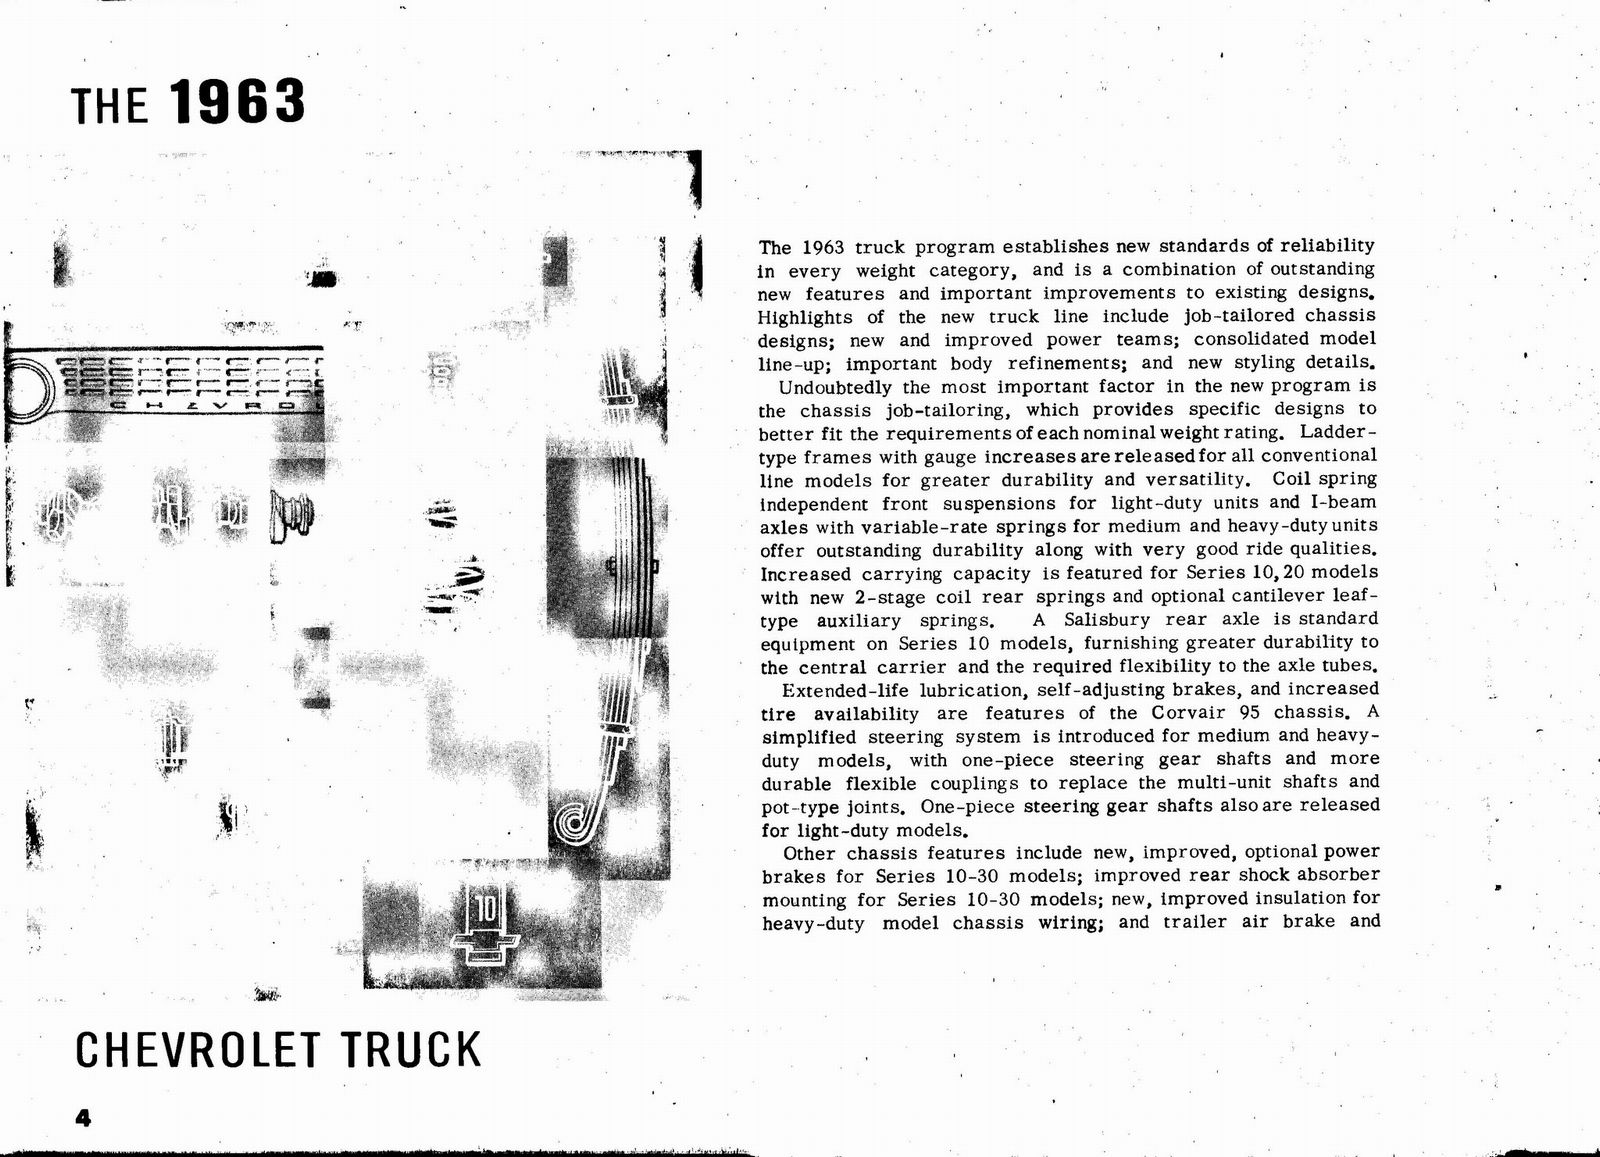 n_1963 Chevrolet Truck Engineering Features-04.jpg